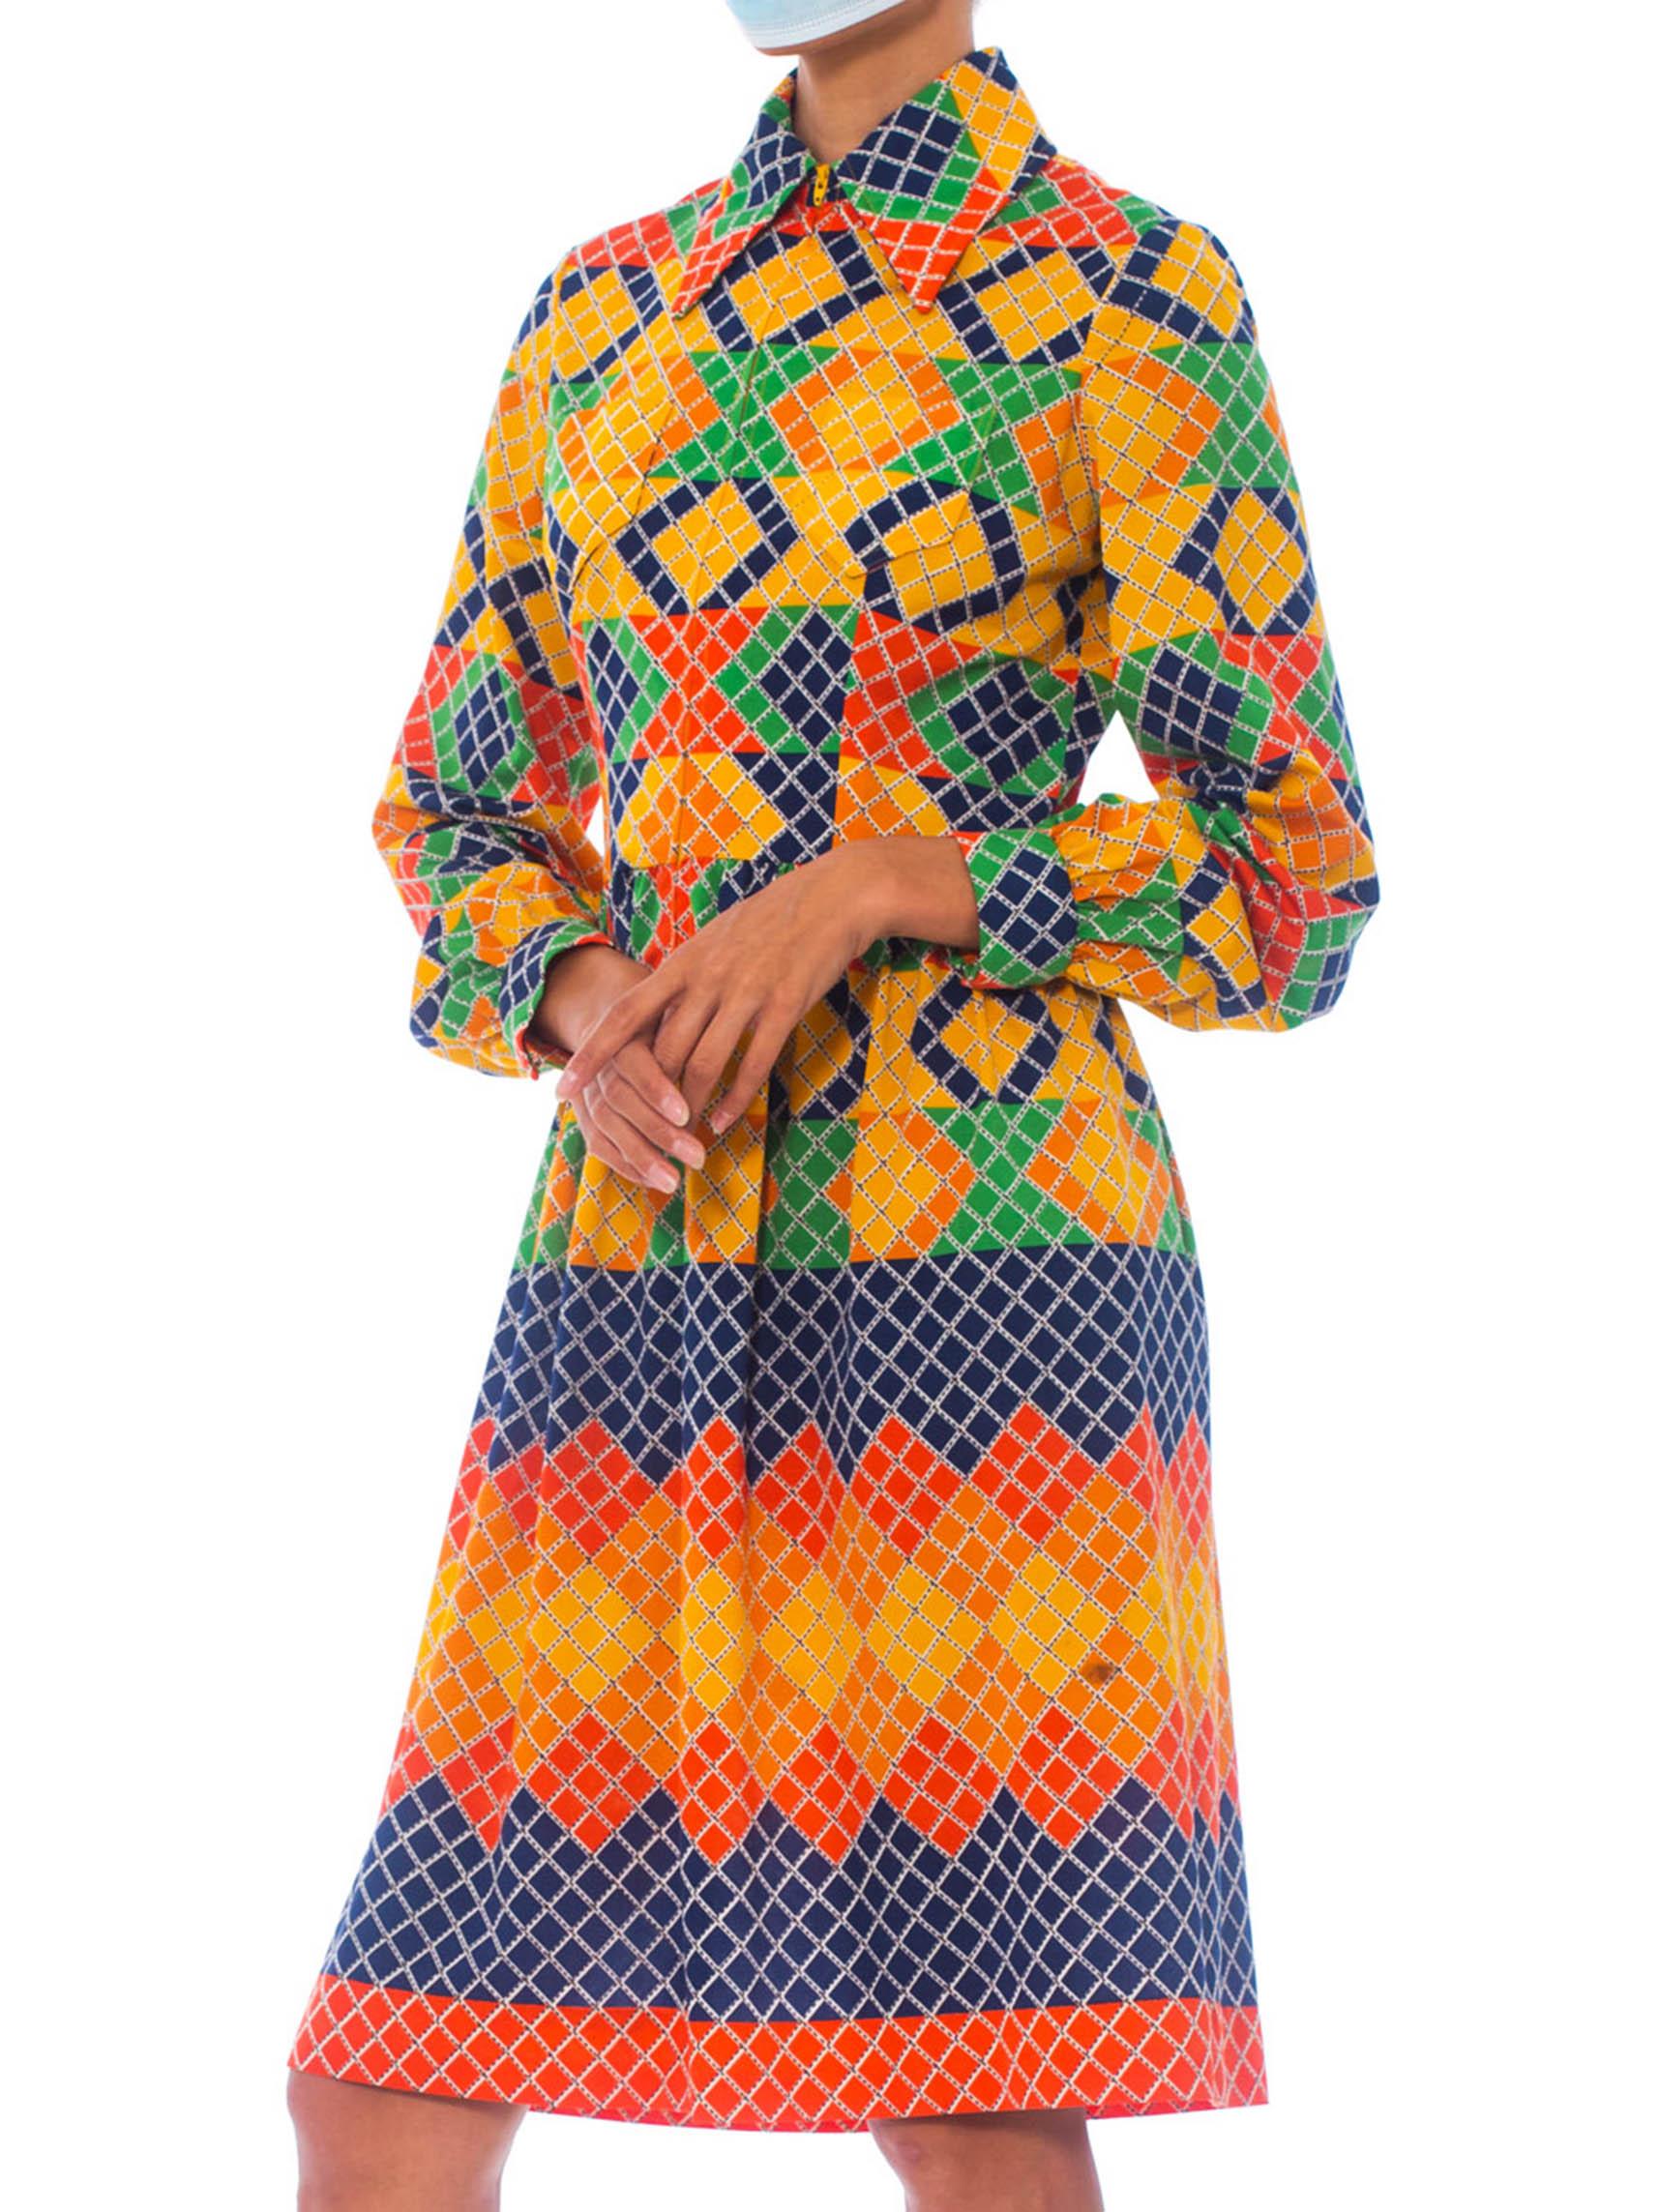  OSCAR DE LA RENTA Robe chemise en jersey de polyester multicolore à motifs géométriques, années 1960 Pour femmes 